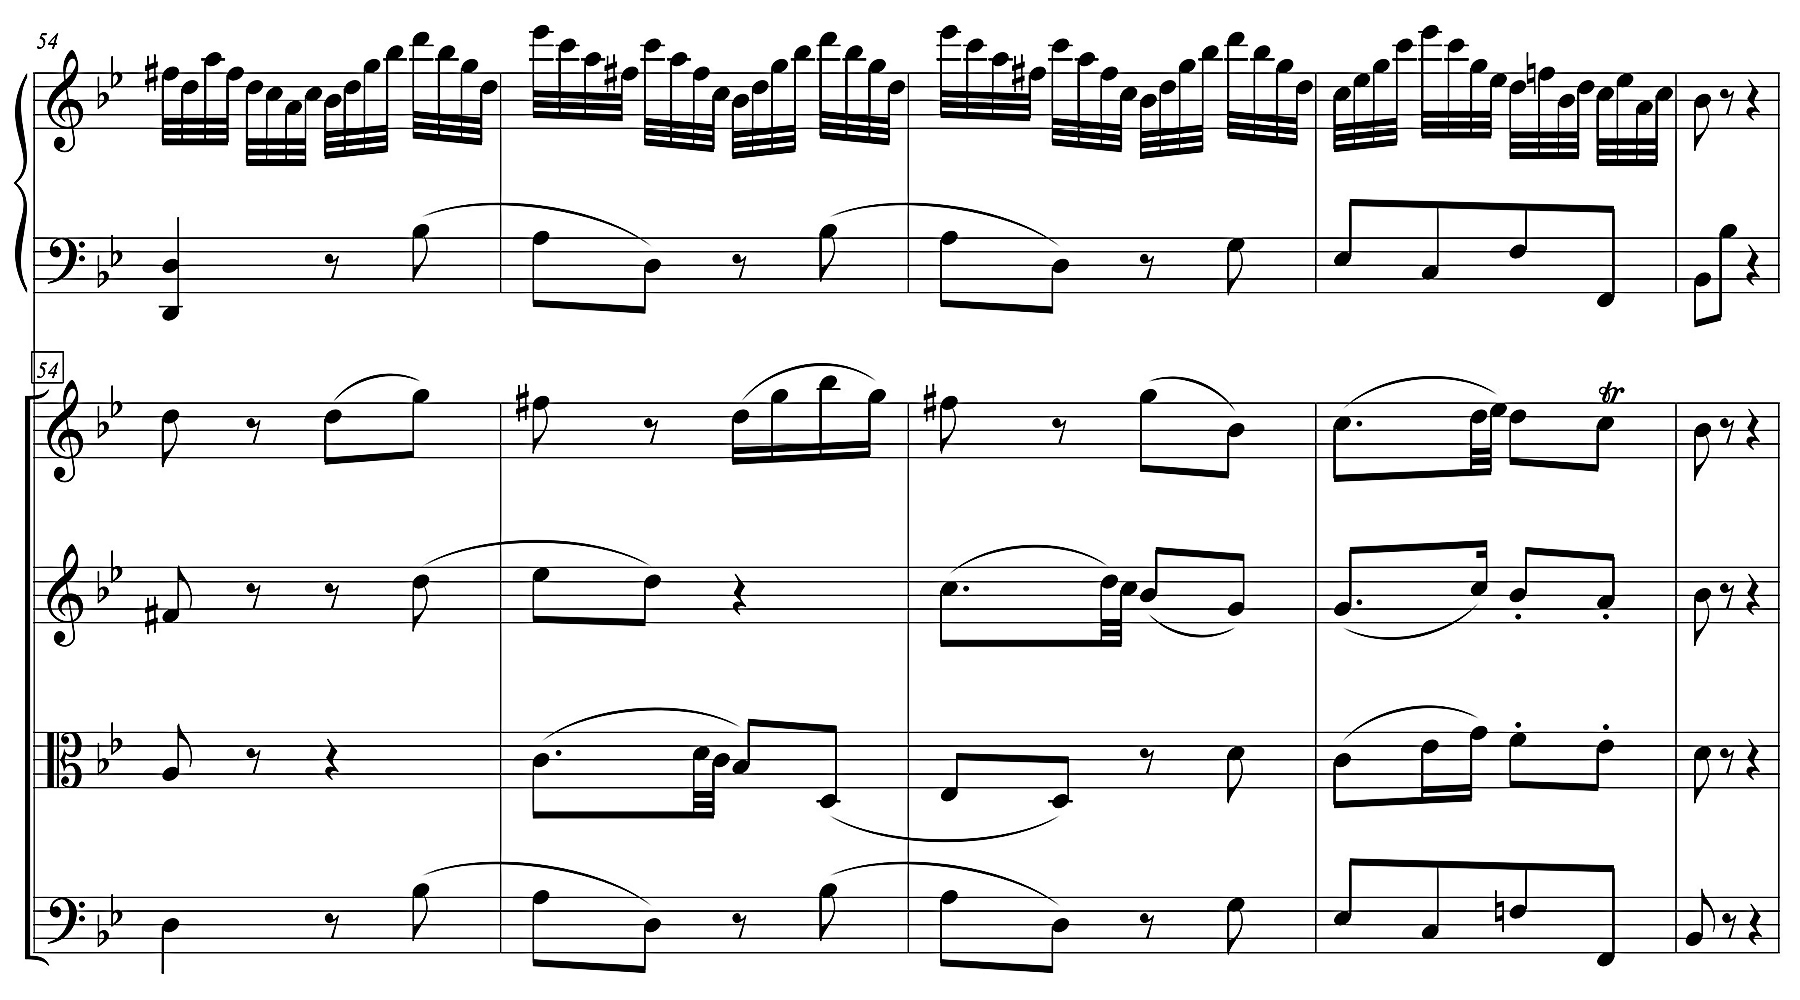 Figure 5b: W. A. Mozart Piano concerto B flat major, KV 456, ‘Andante con moto’, bars 54-57.